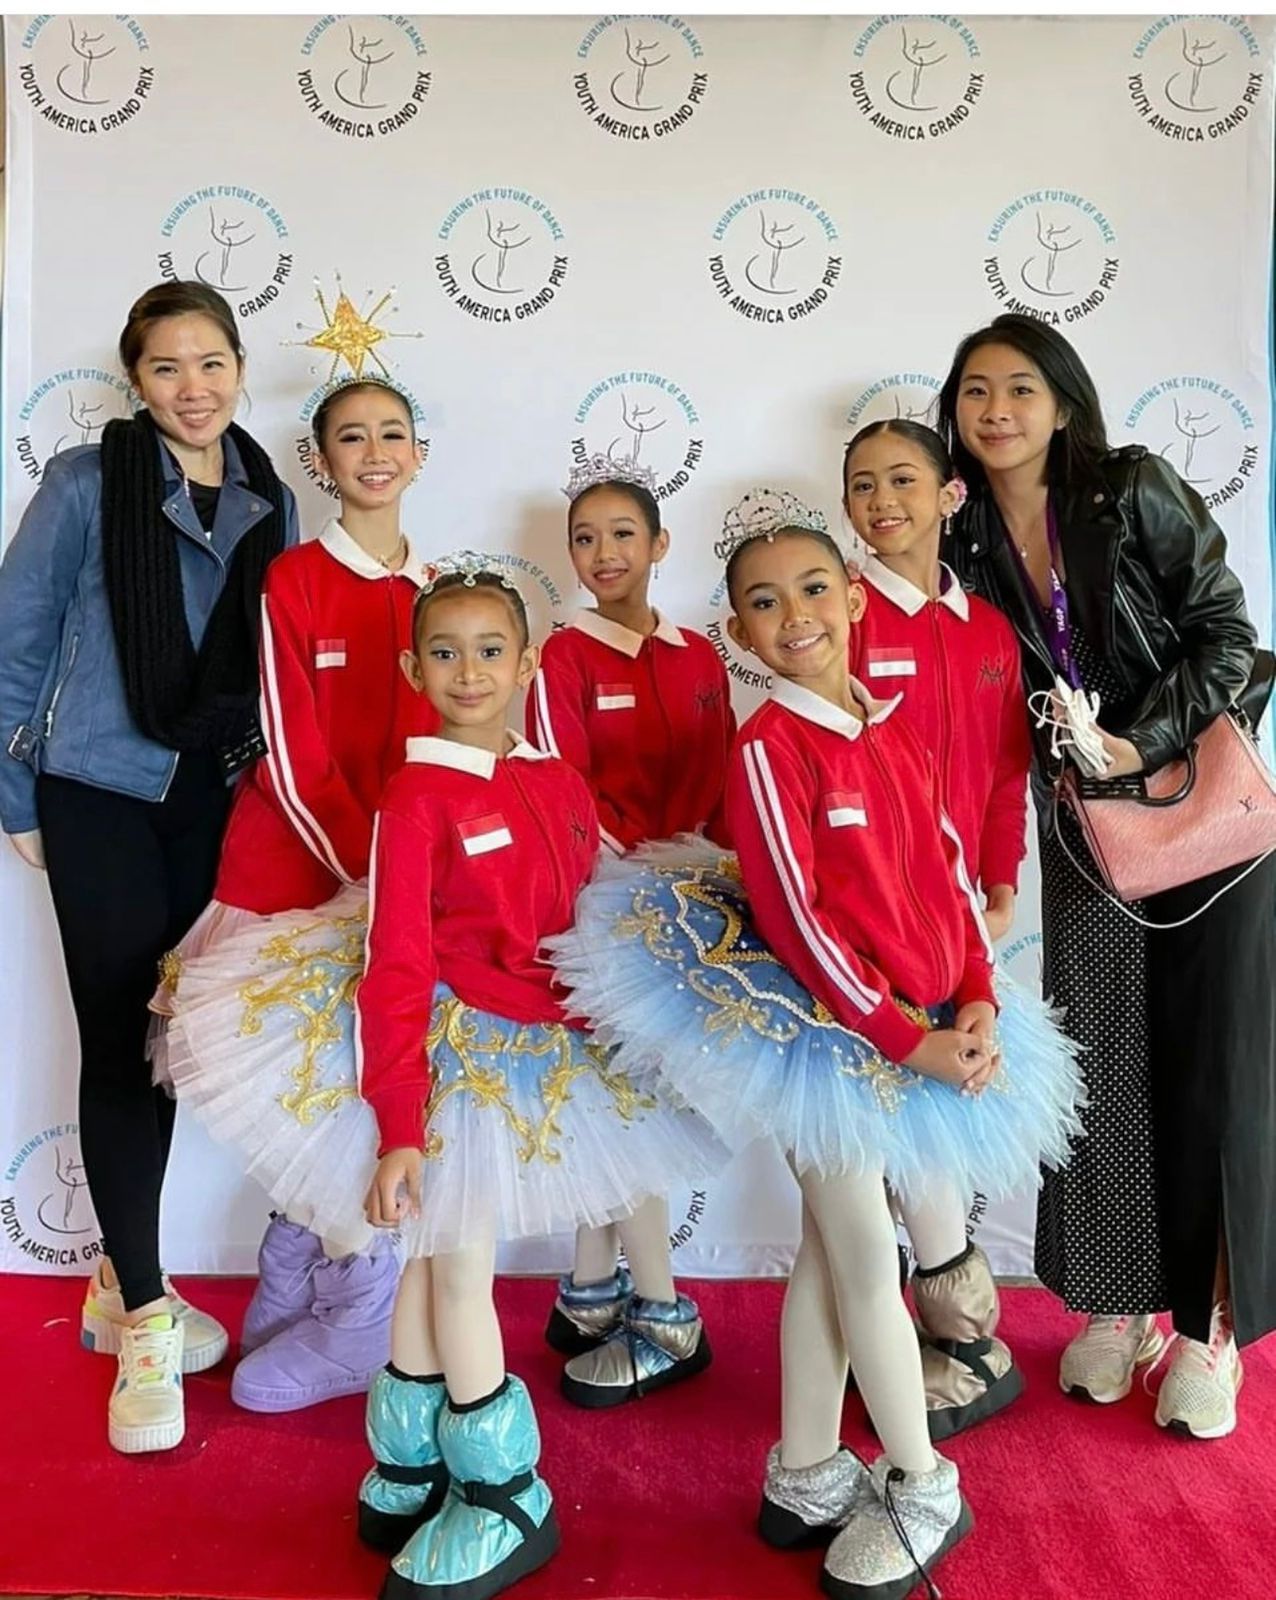 Marlupi Dance Academy kembali menunjukkan taringnya di kompetisi balet internasional. Sempat tidak aktif mengikuti kejuaraan saat pandemi, sekolah balet tertua di Indonesia kini kembali mengirimkan ketujuh murid berprestasi ke ajang Youth Grand Prix (YGP) 2022 di Tampa, Florida, AS.